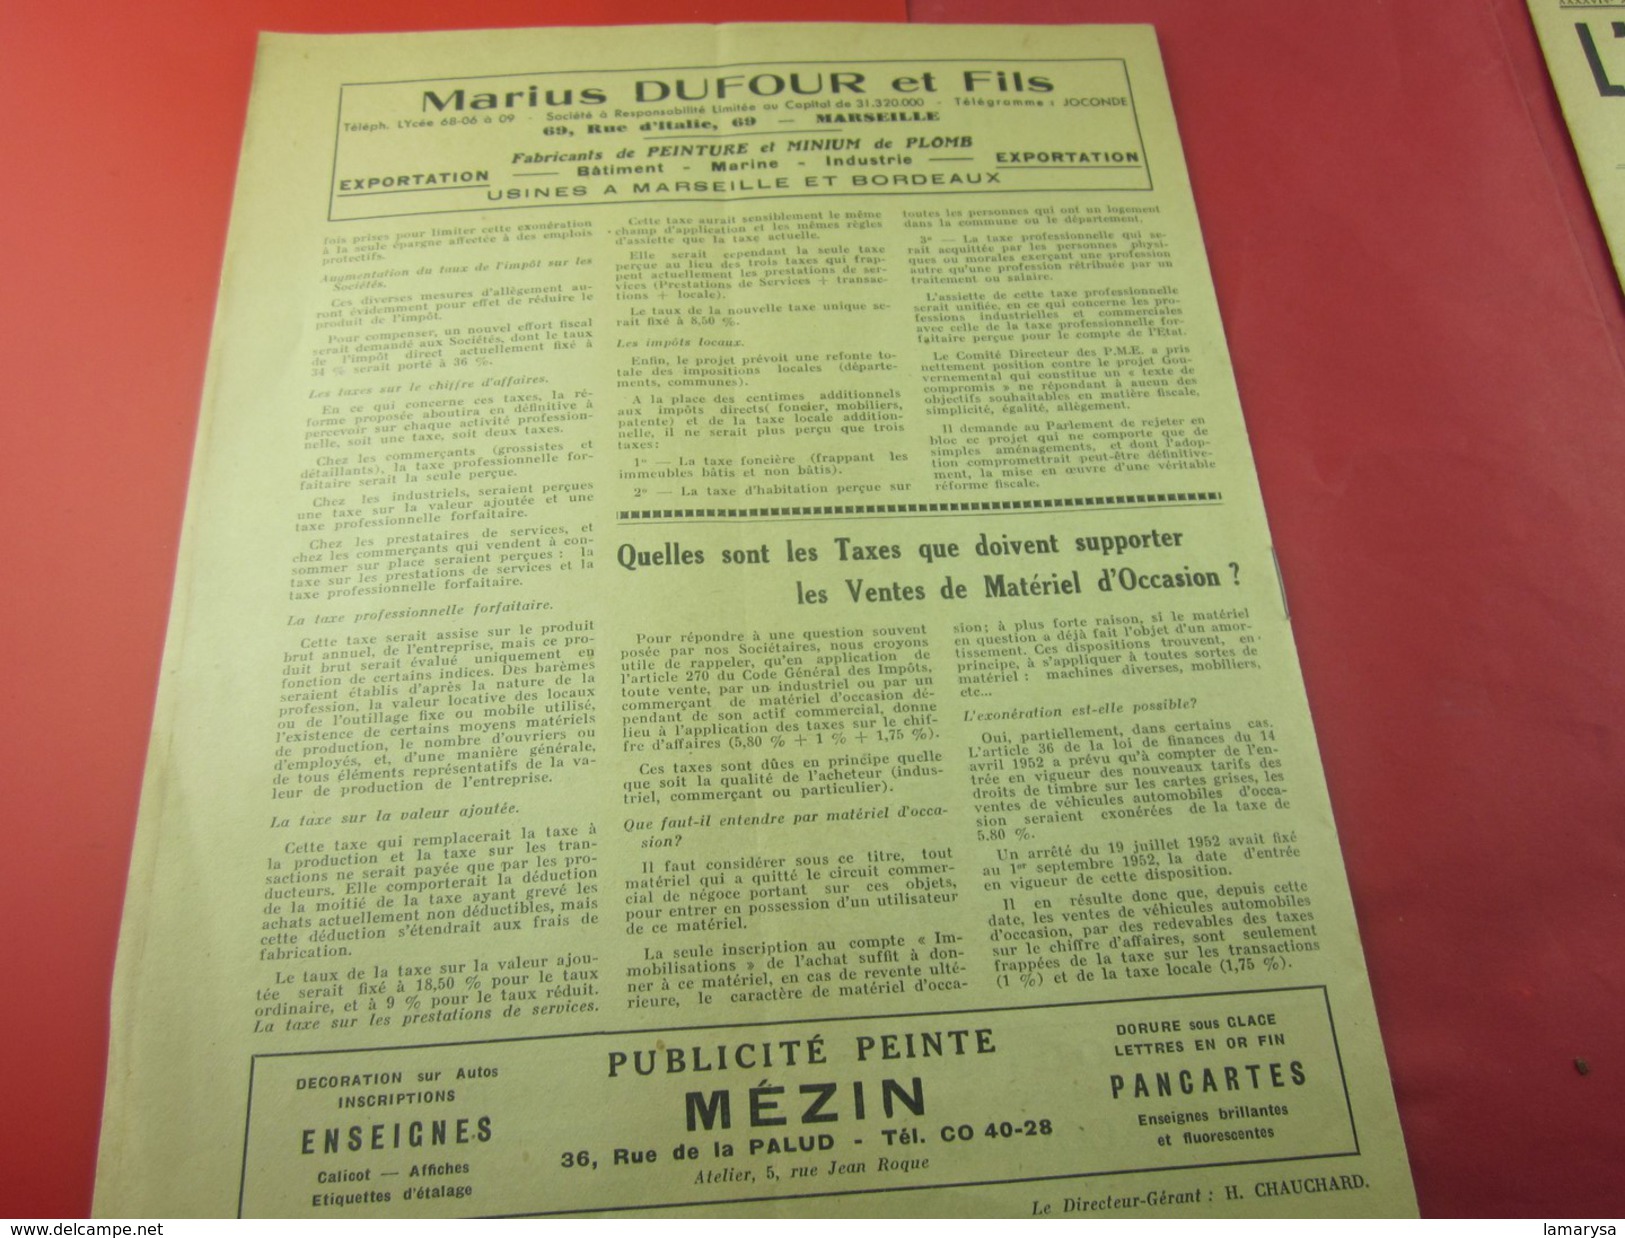 1er Dec 1953 Journal Mens. L'AVENIR COMMERCIAL INFO MARSEILLE PUB FOIRE INTERNATIONALE ELECTIONS COSULAIRES Voir Scanns - 1950 - Today